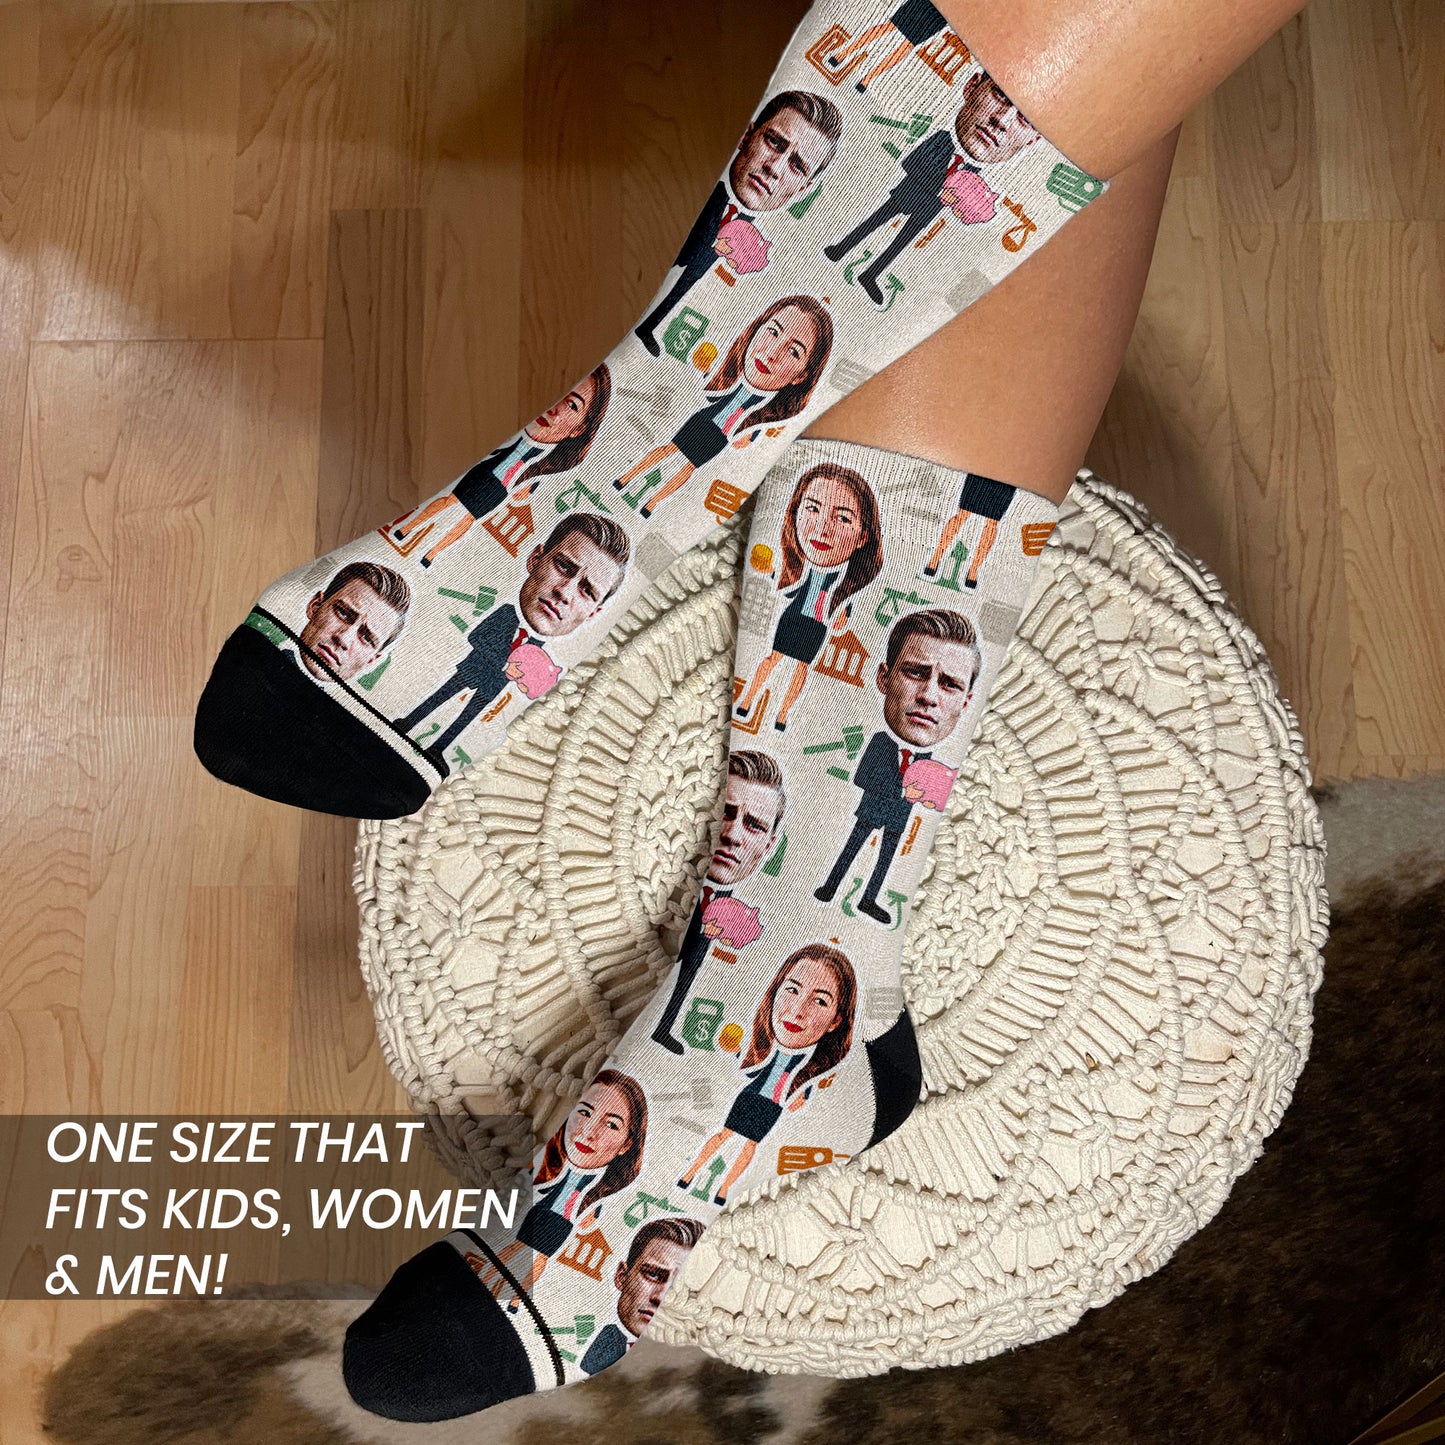 banking gift socks on female's feet